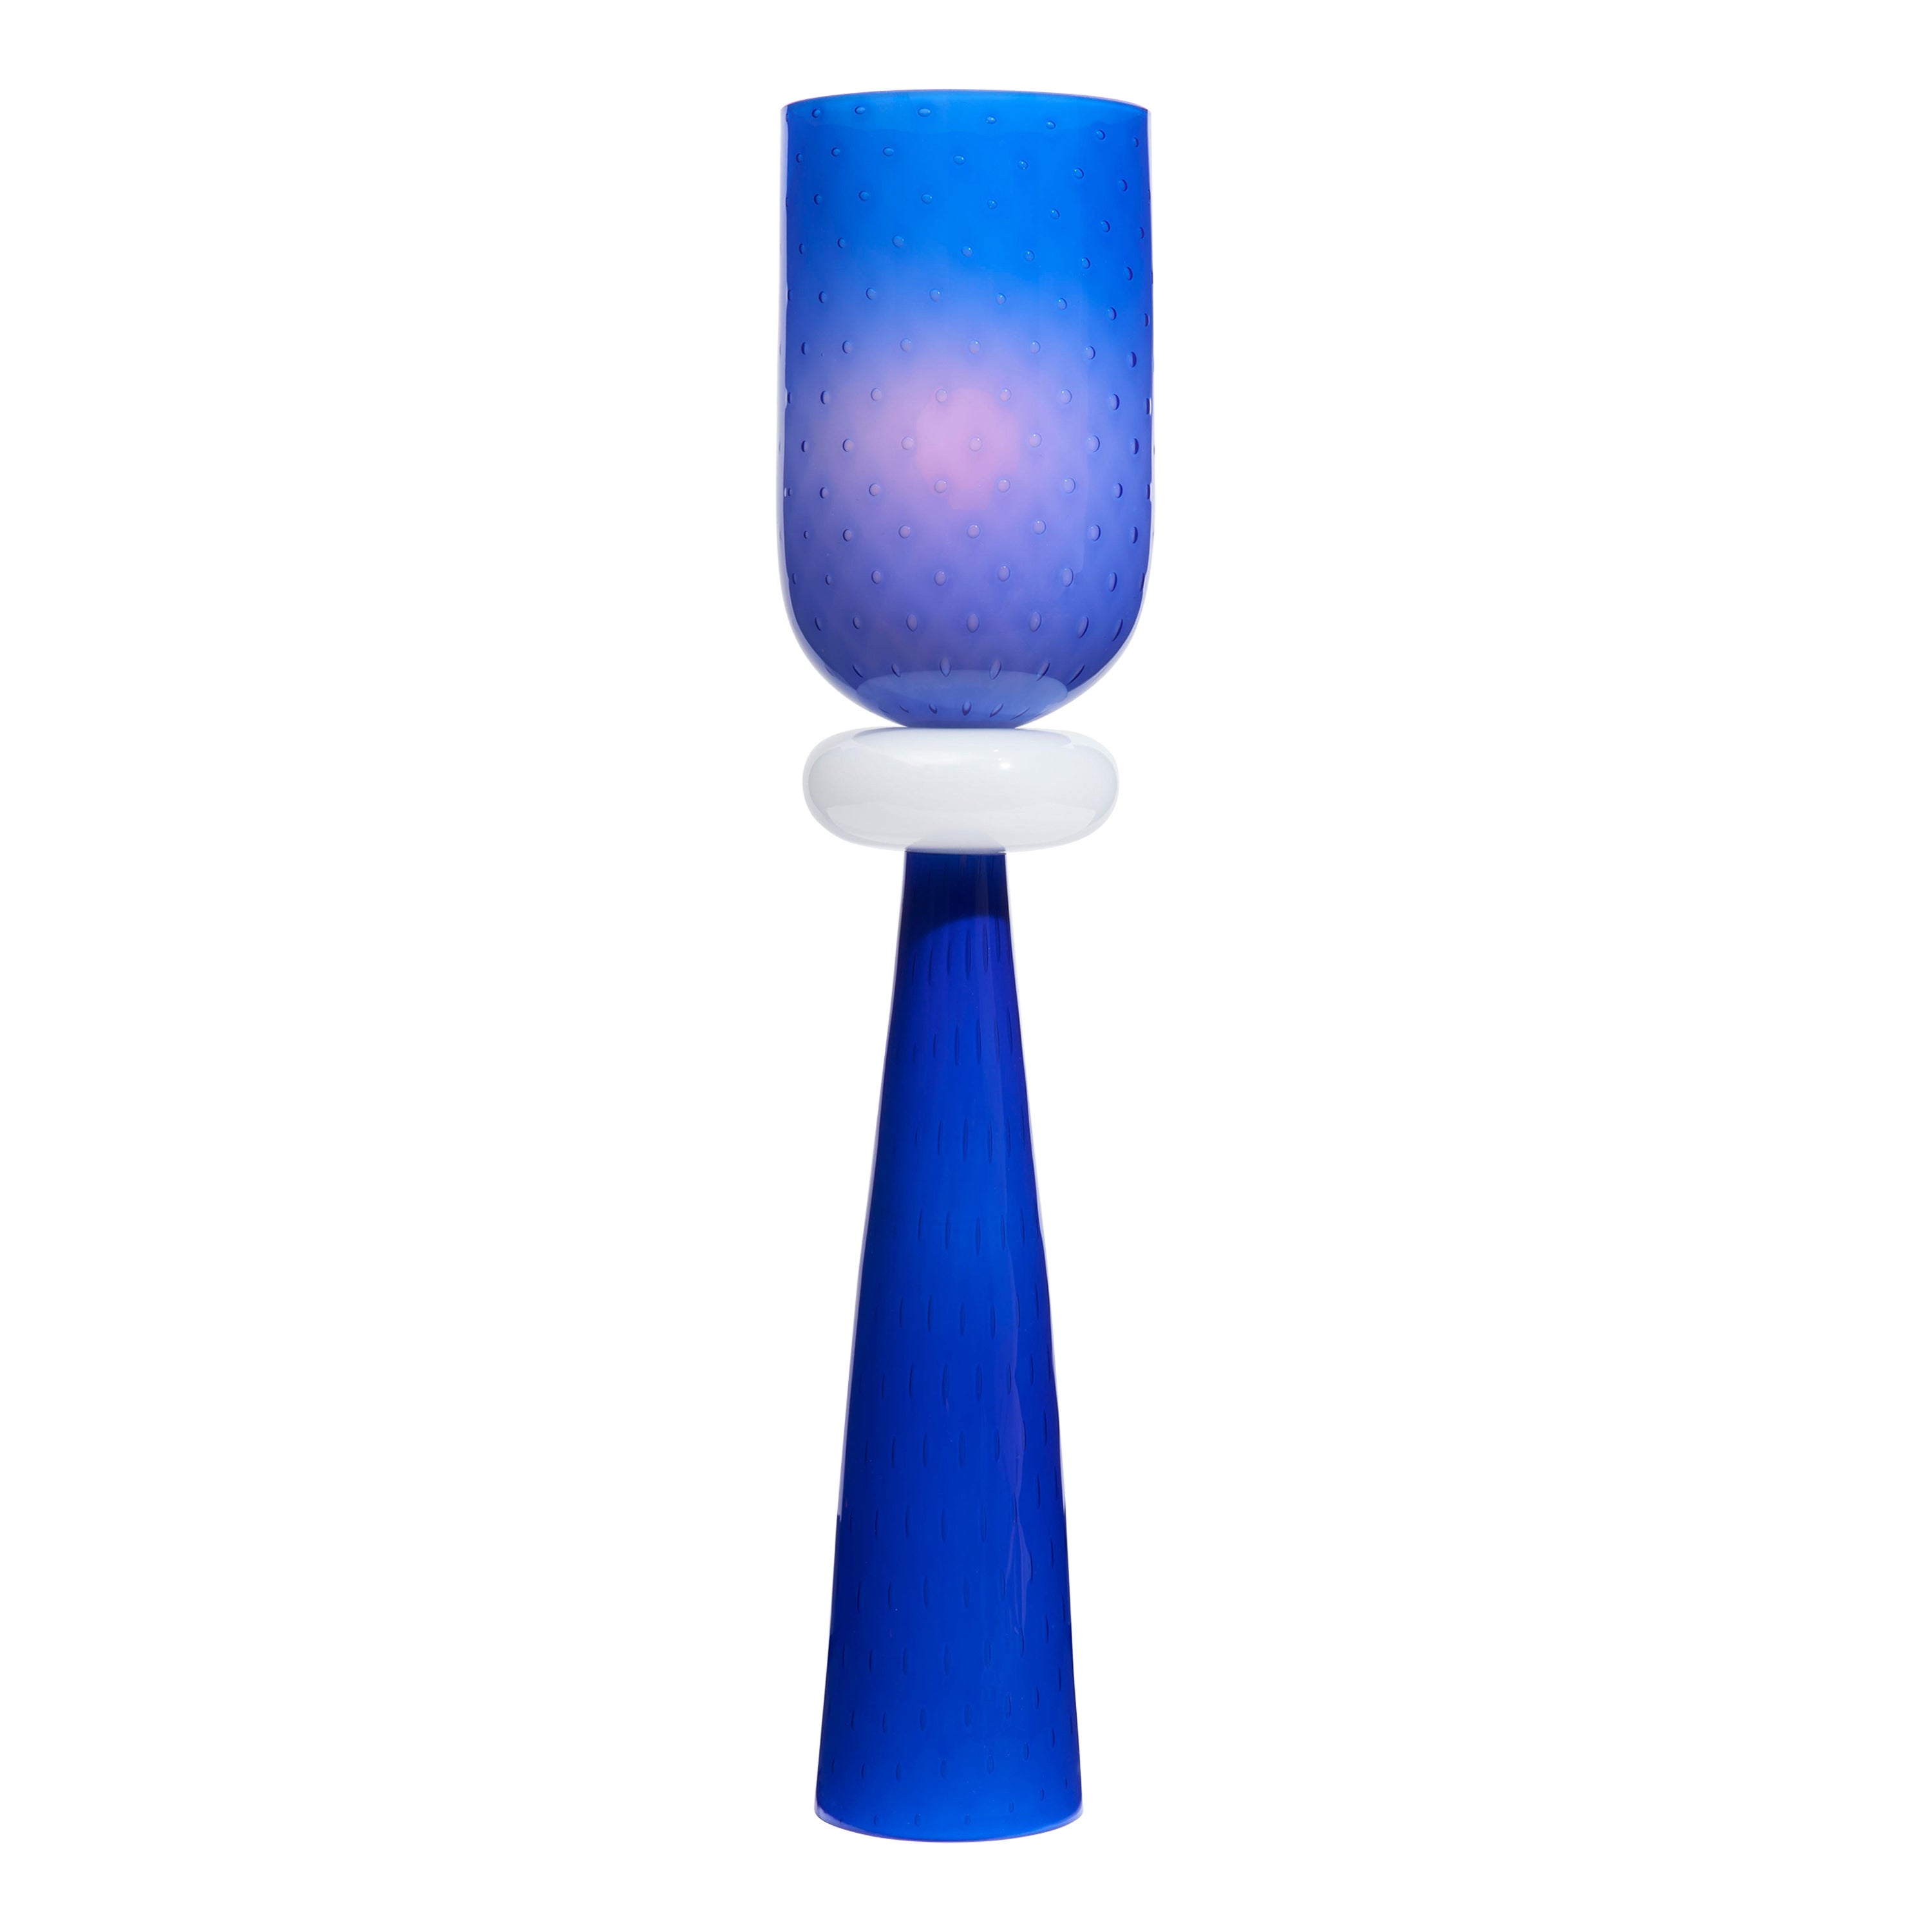 Tischlampe "Totem 3" aus mundgeblasenem Glas im venezianischen Stil in Kobaltblau und Weiß